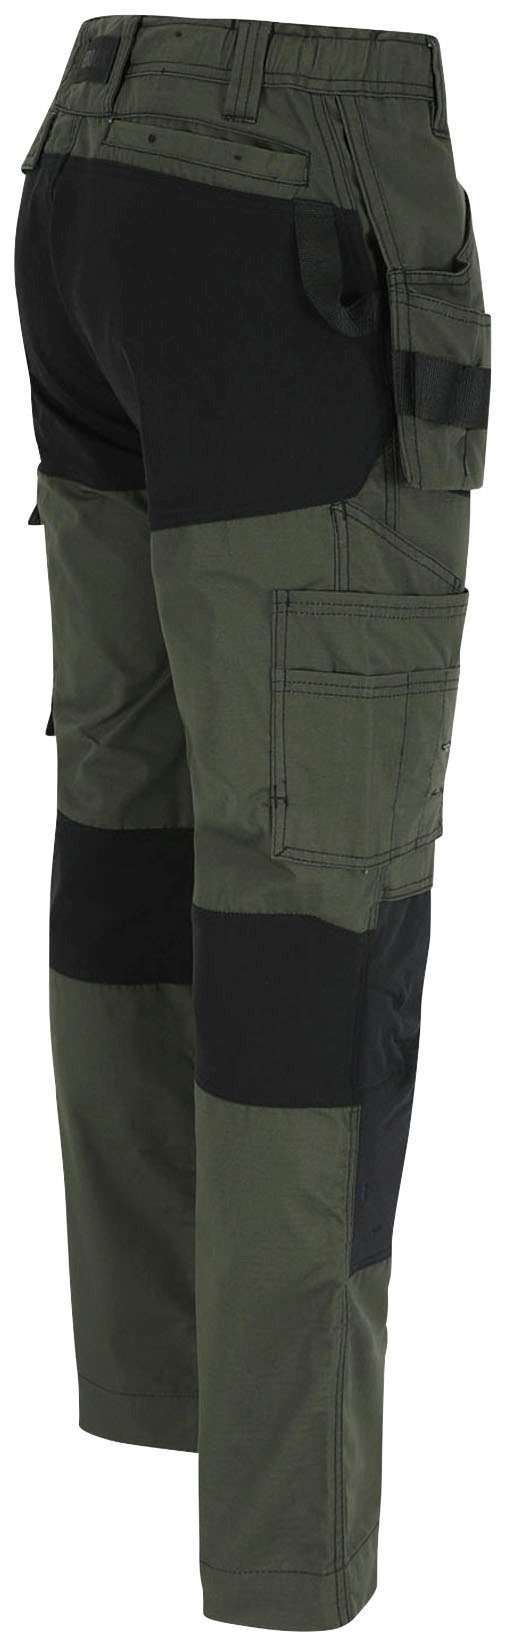 Herock Arbeitshose Spector Hose Nageltaschen mit und Multi-Pocket-Hose 4-Wege-Stretch-Teilen 2 festen khaki